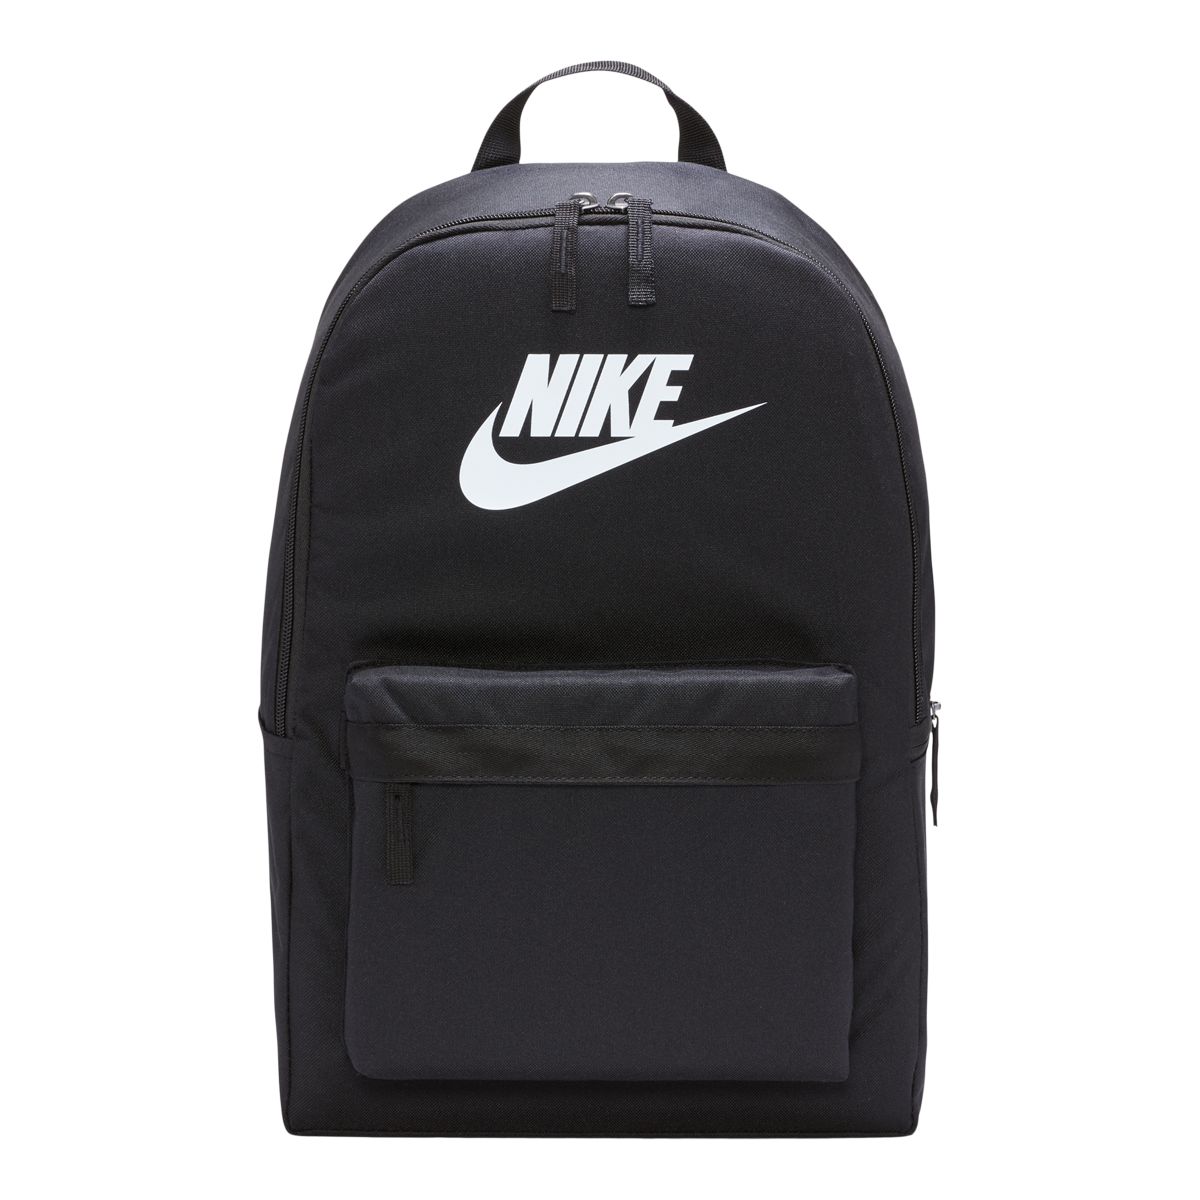 Nike Unisex Heritage School/Gym Backpack  Laptop Sleeve